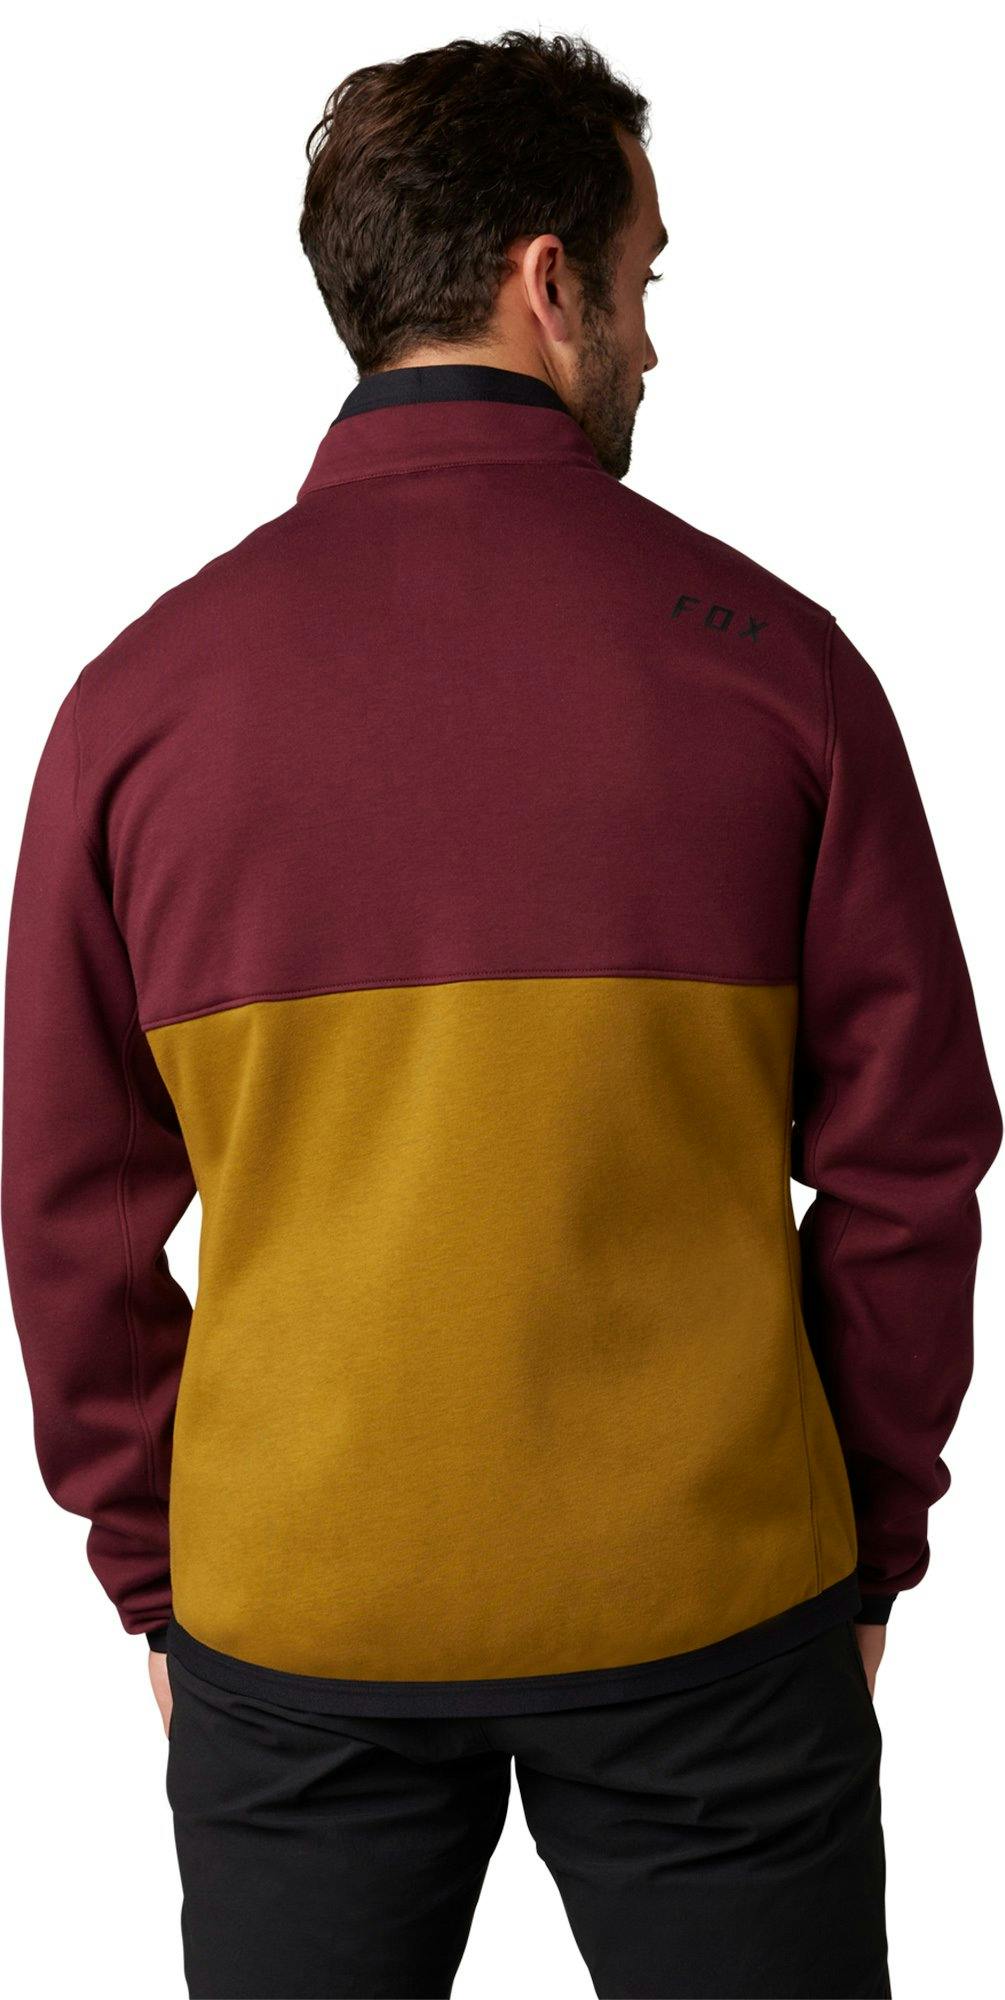 Product gallery image number 5 for product Ranger Fire Fleece Crew Sweatshirt - Men's